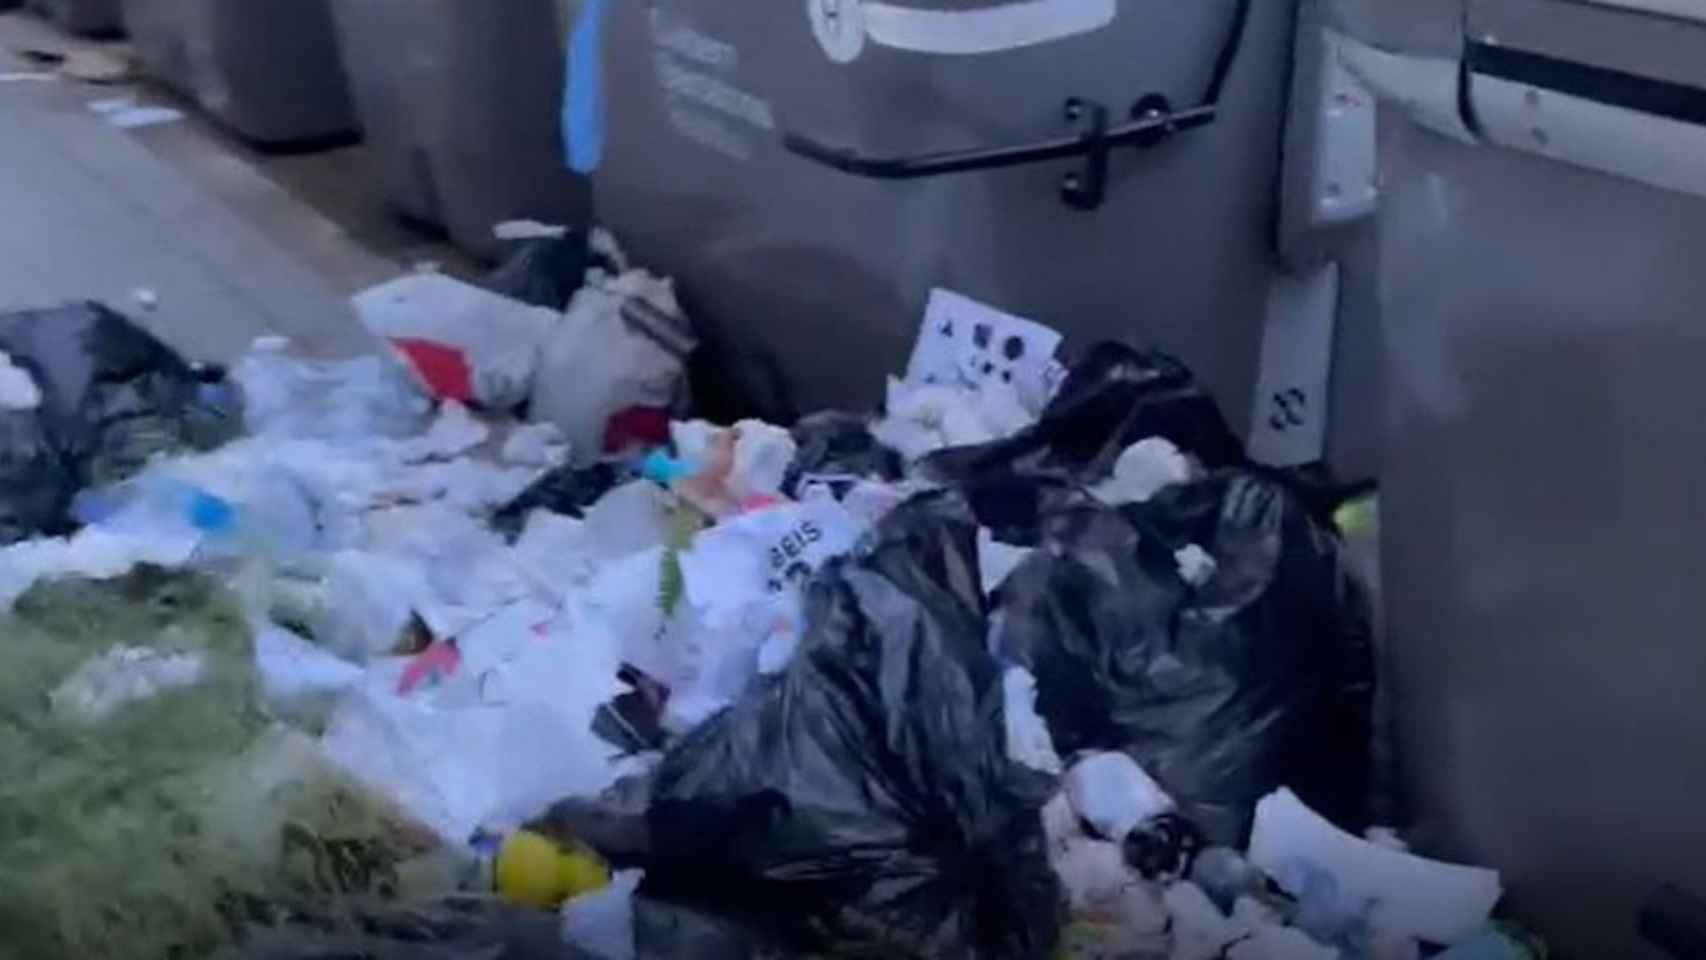 Contenedores en Barcelona desbordados de bolsas de basura / METRÓPOLI